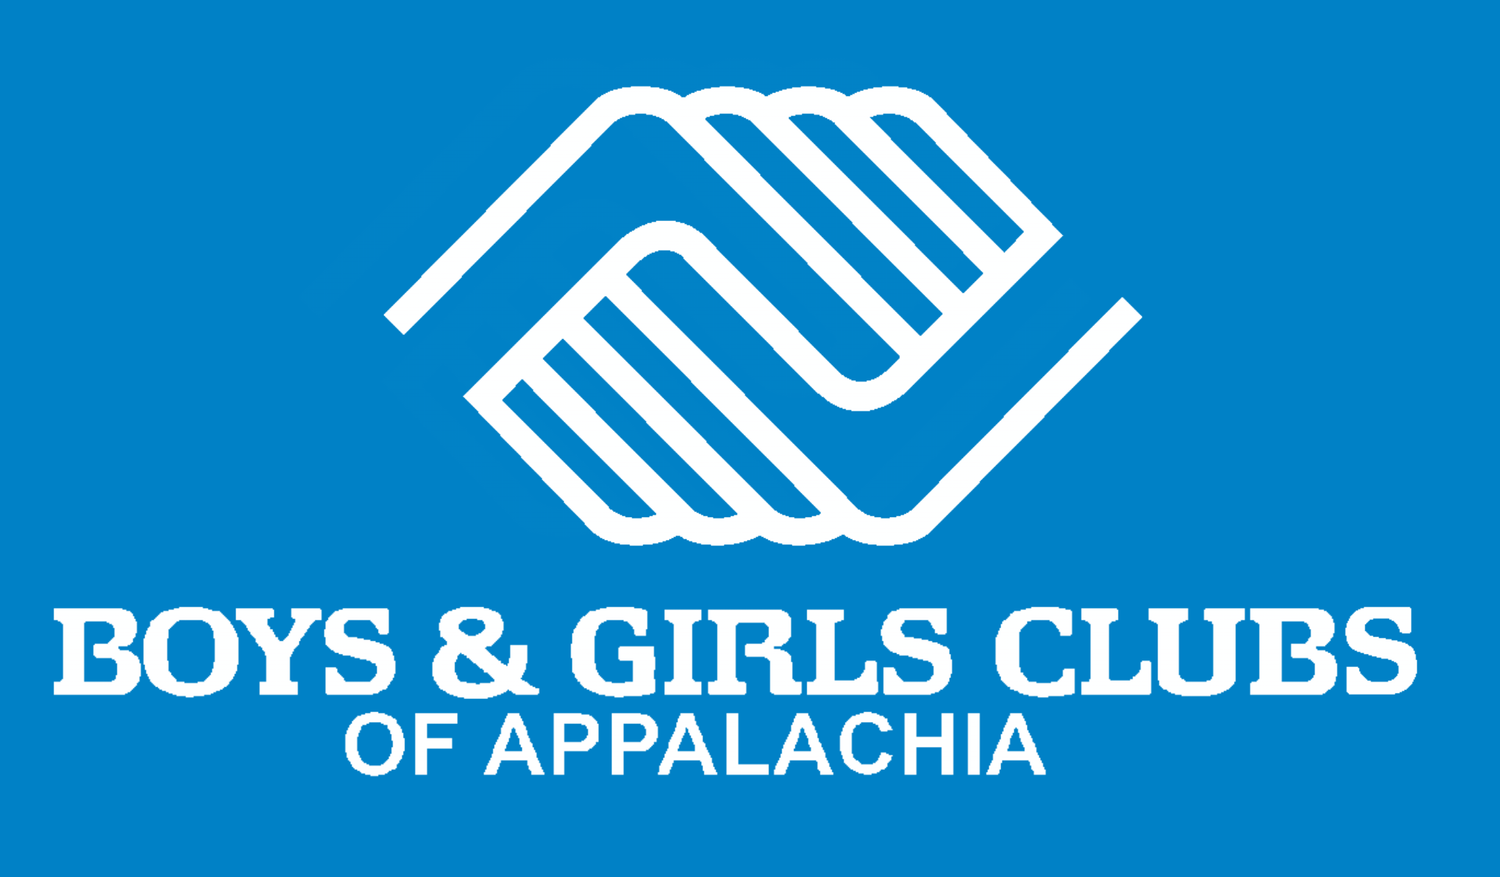 Boys & Girls Clubs of Appalachia